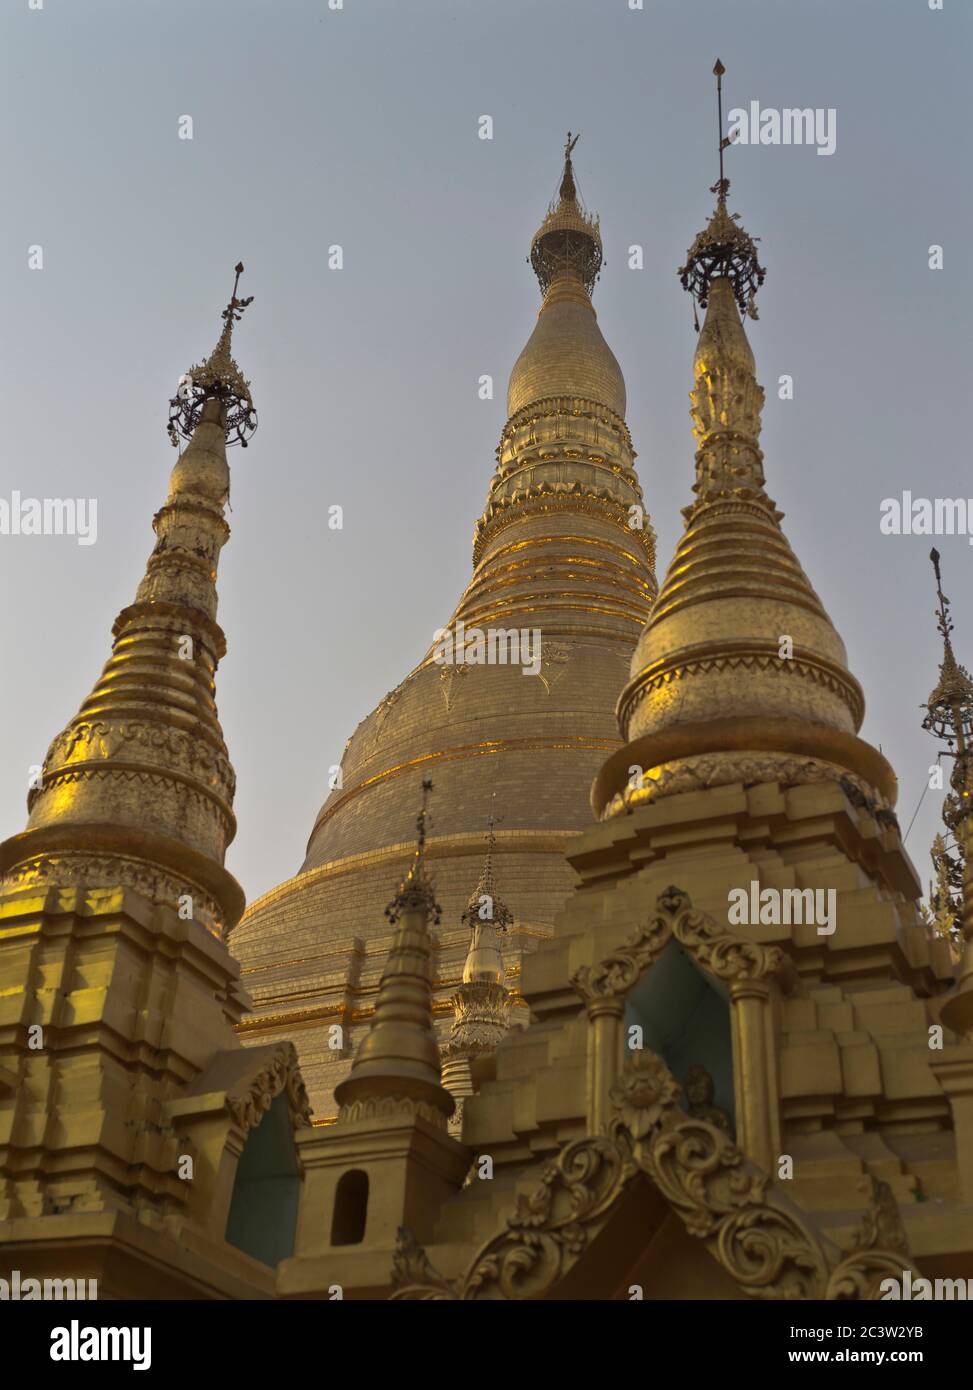 dh Shwedagon Pagoda templo YANGON MYANMAR Budismo birmano Gran Dagón Zedi Daw estupa de oro hoja de oro Foto de stock